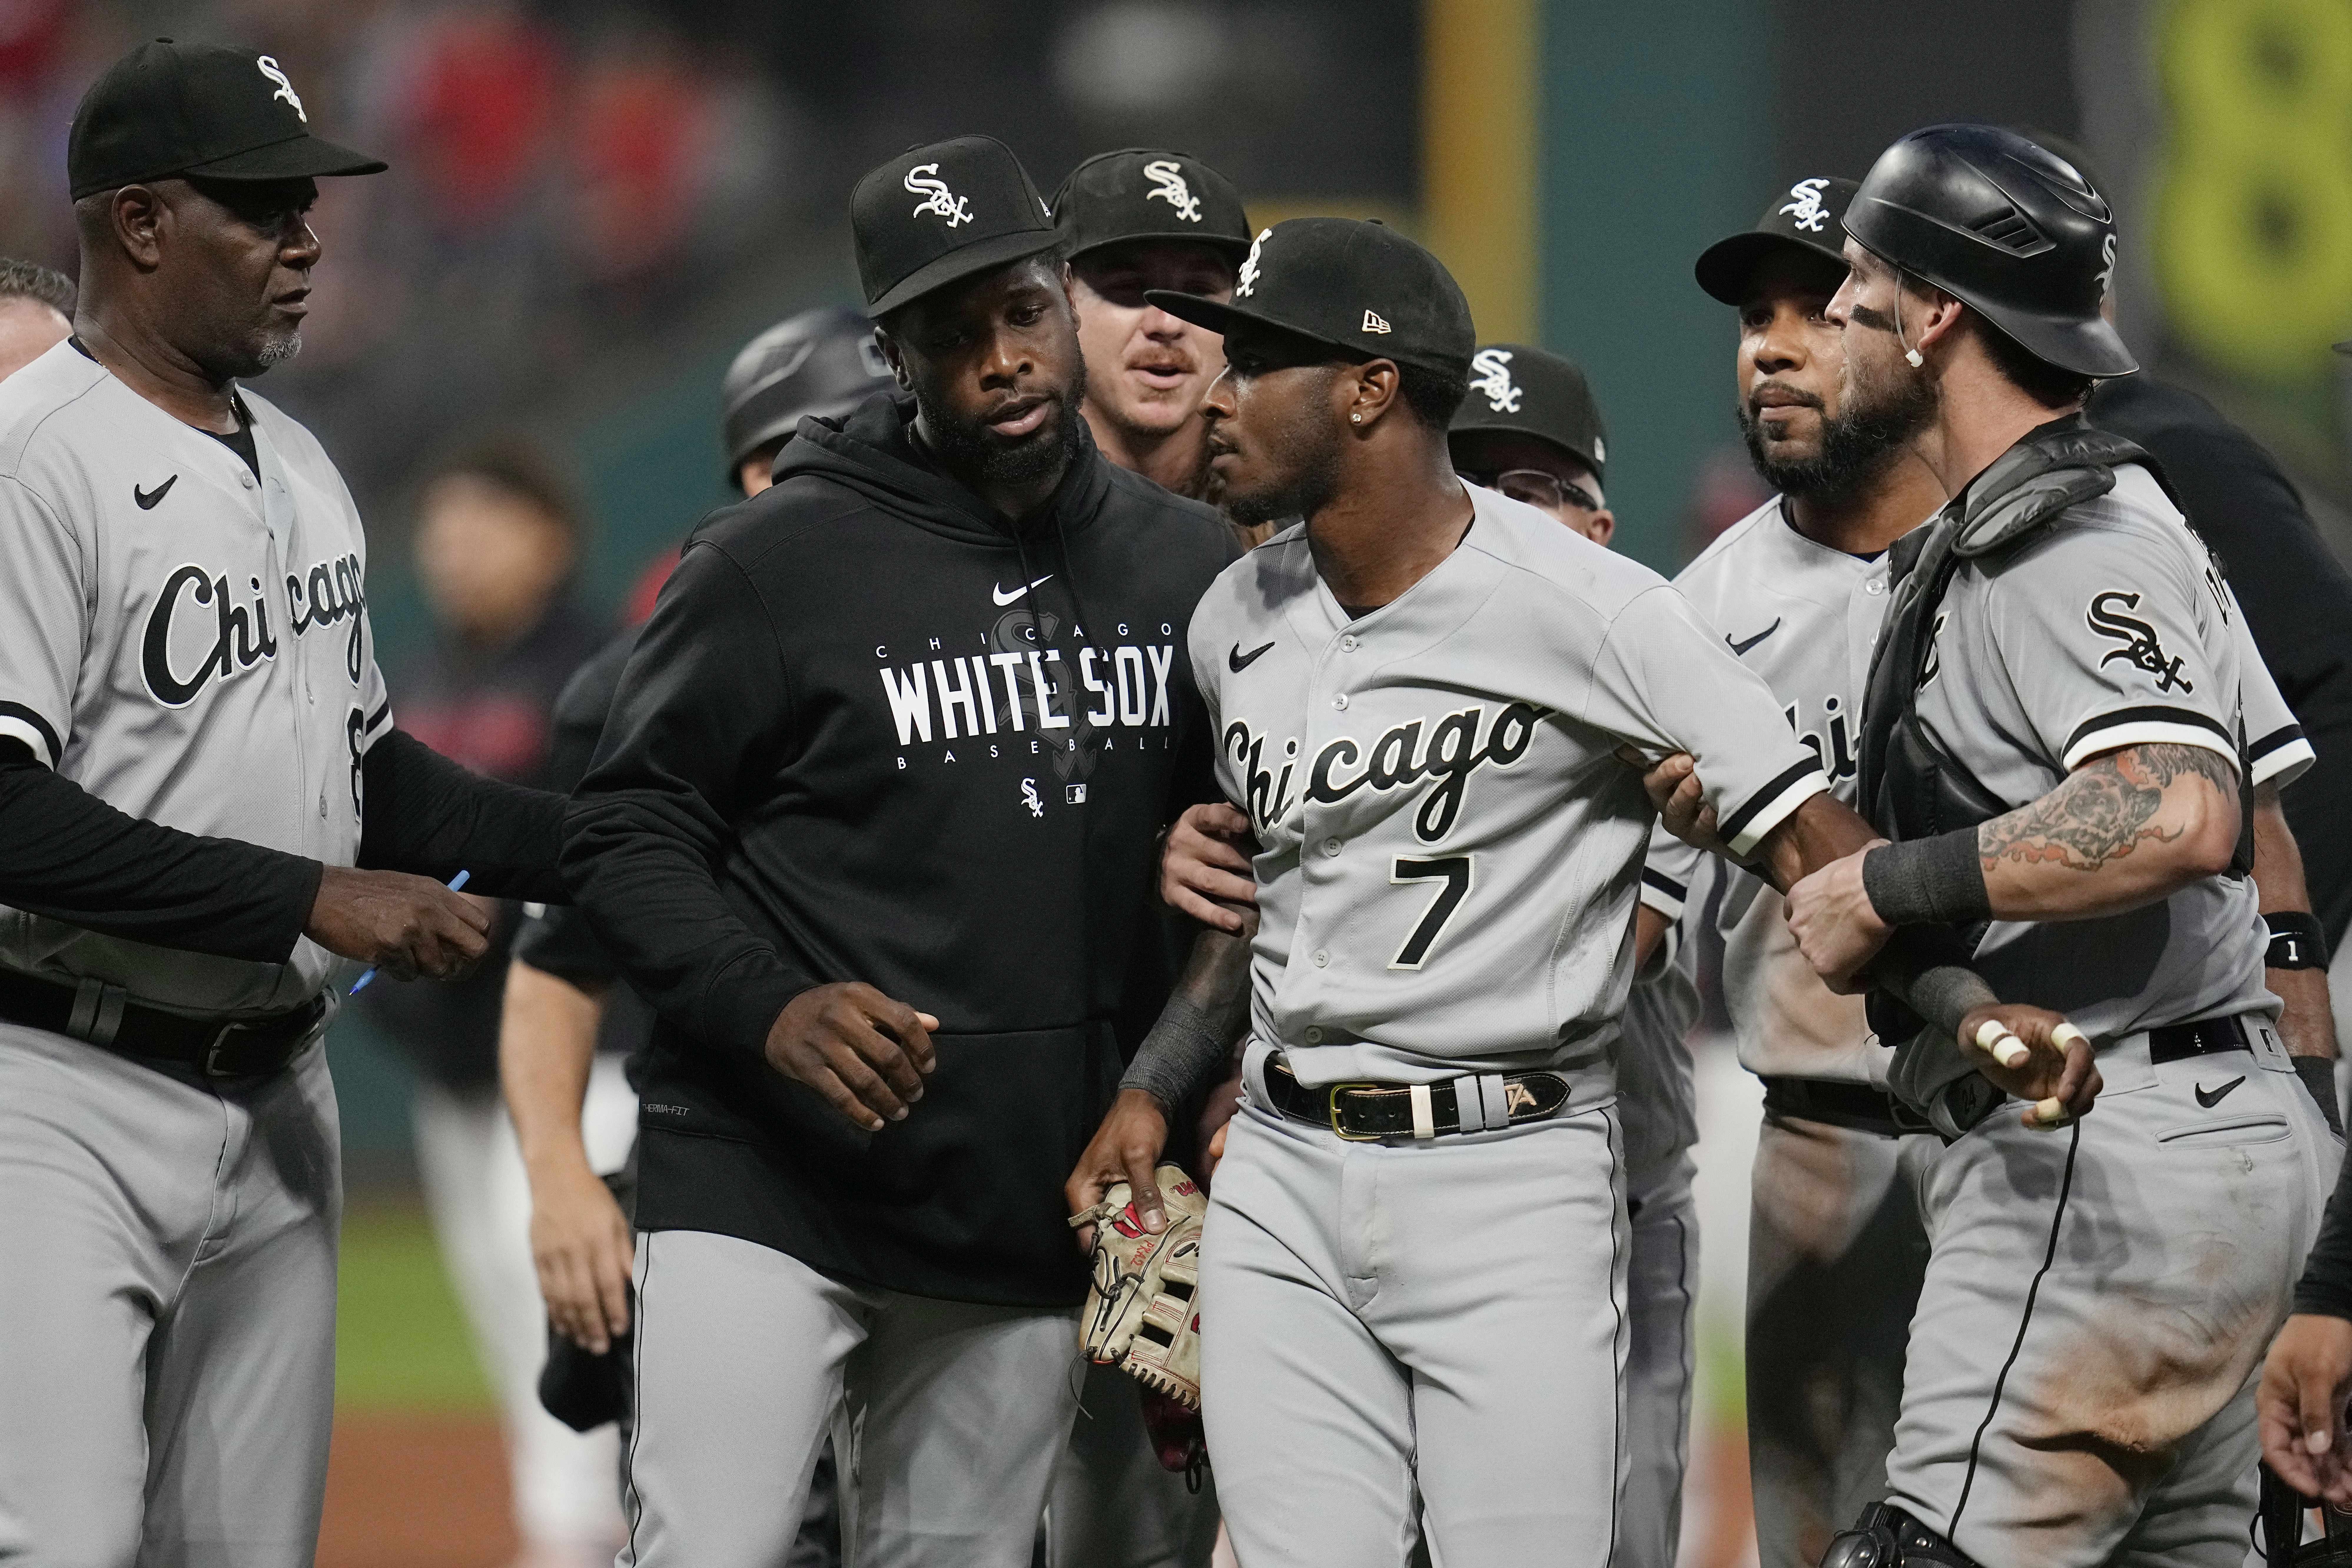 Chicago White Sox await word on MLB discipline for brawl